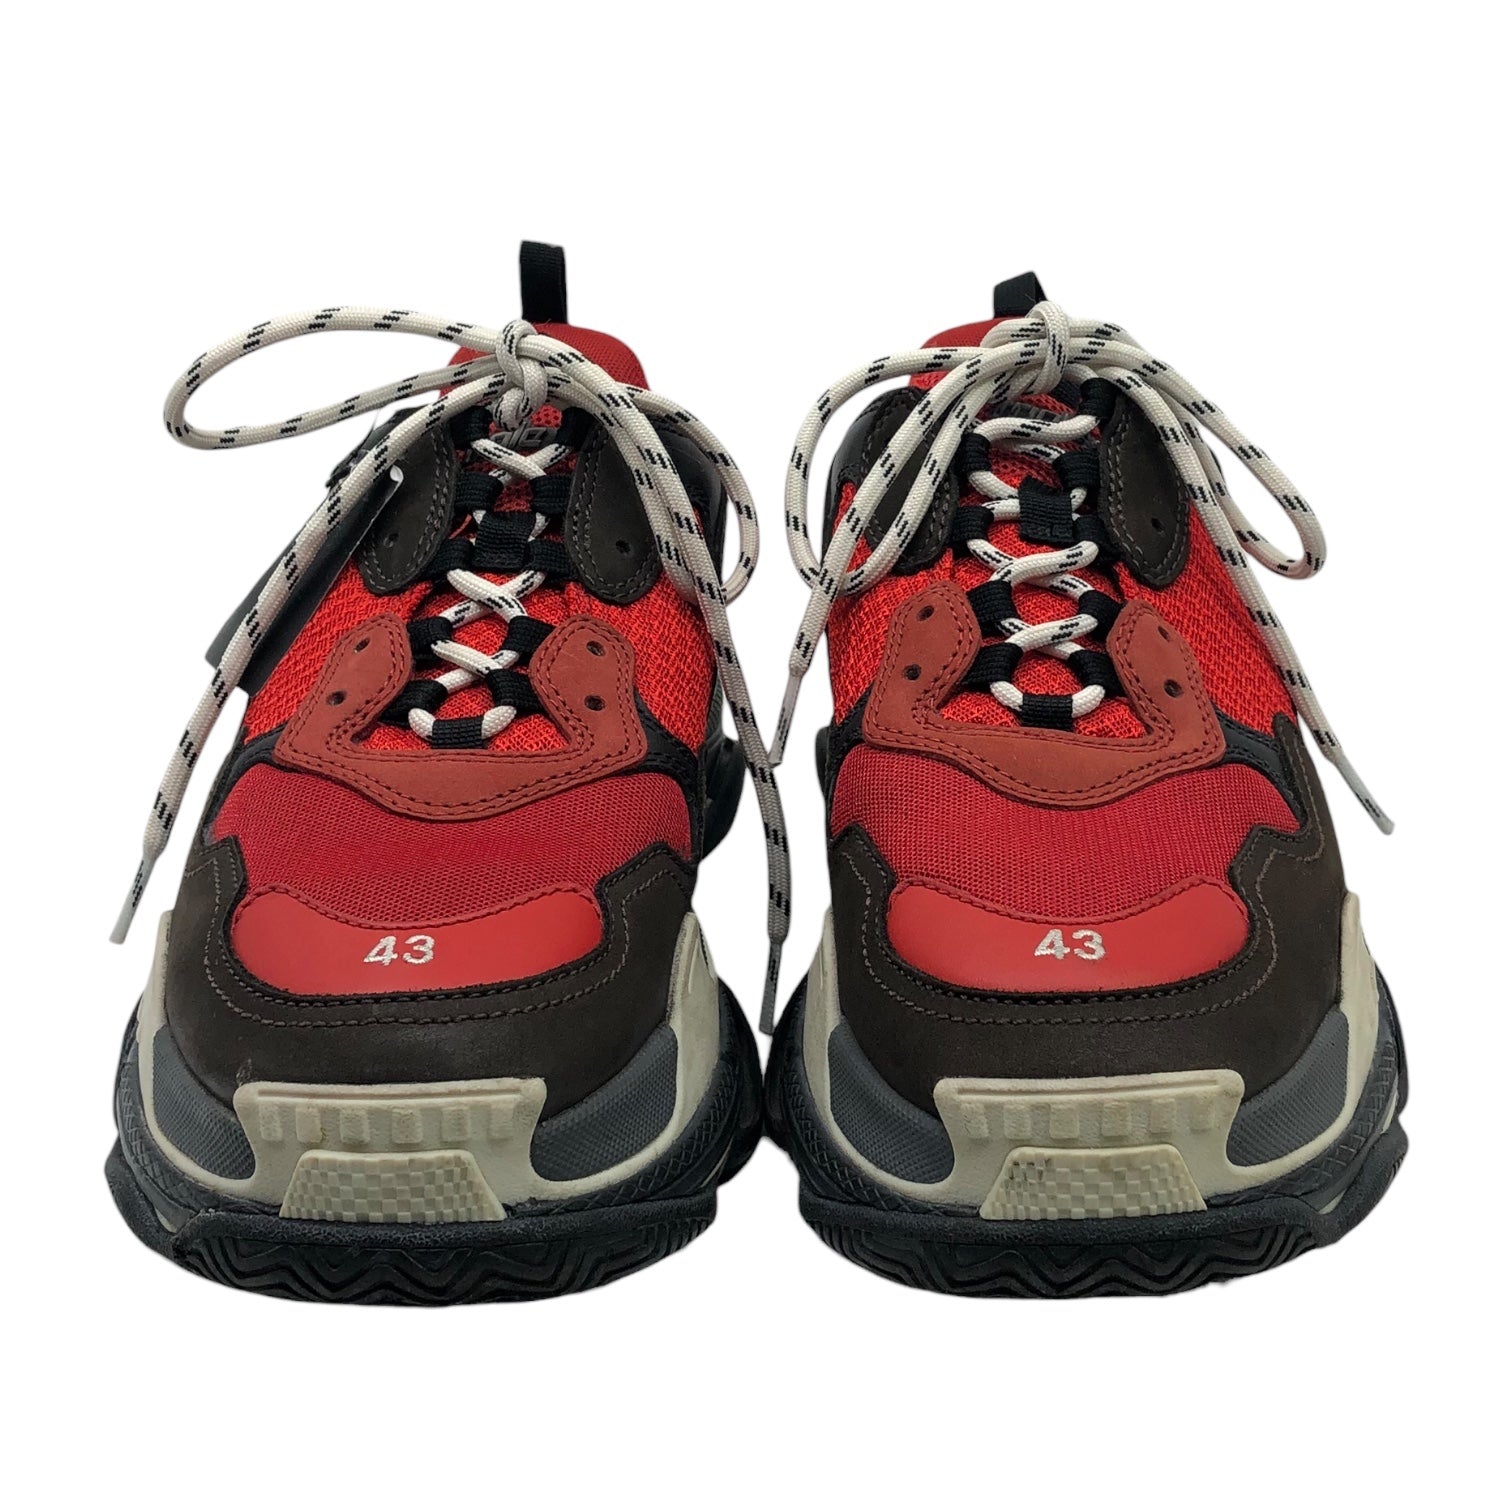 BALENCIAGA(バレンシアガ) 19SS Triple S shoes トリプルエス 516440 28.5cm レッド 箱付 ダット 厚底 テック ボリューム スニーカー